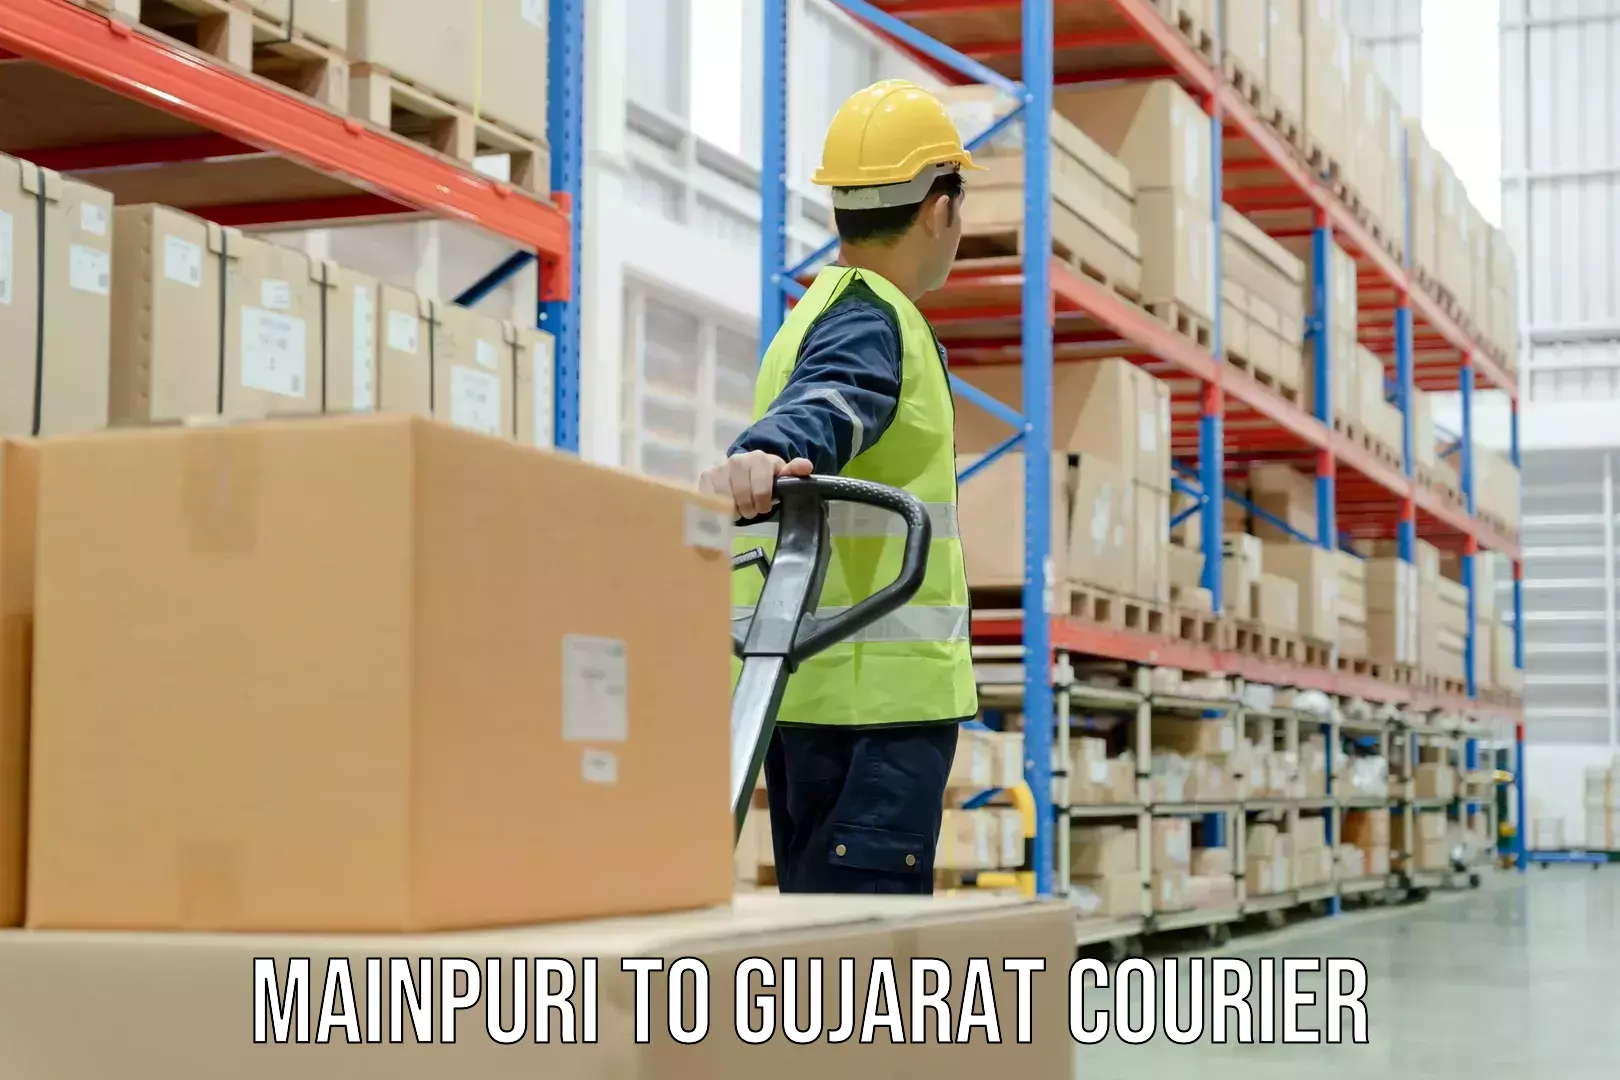 Multi-national courier services Mainpuri to Jamjodhpur